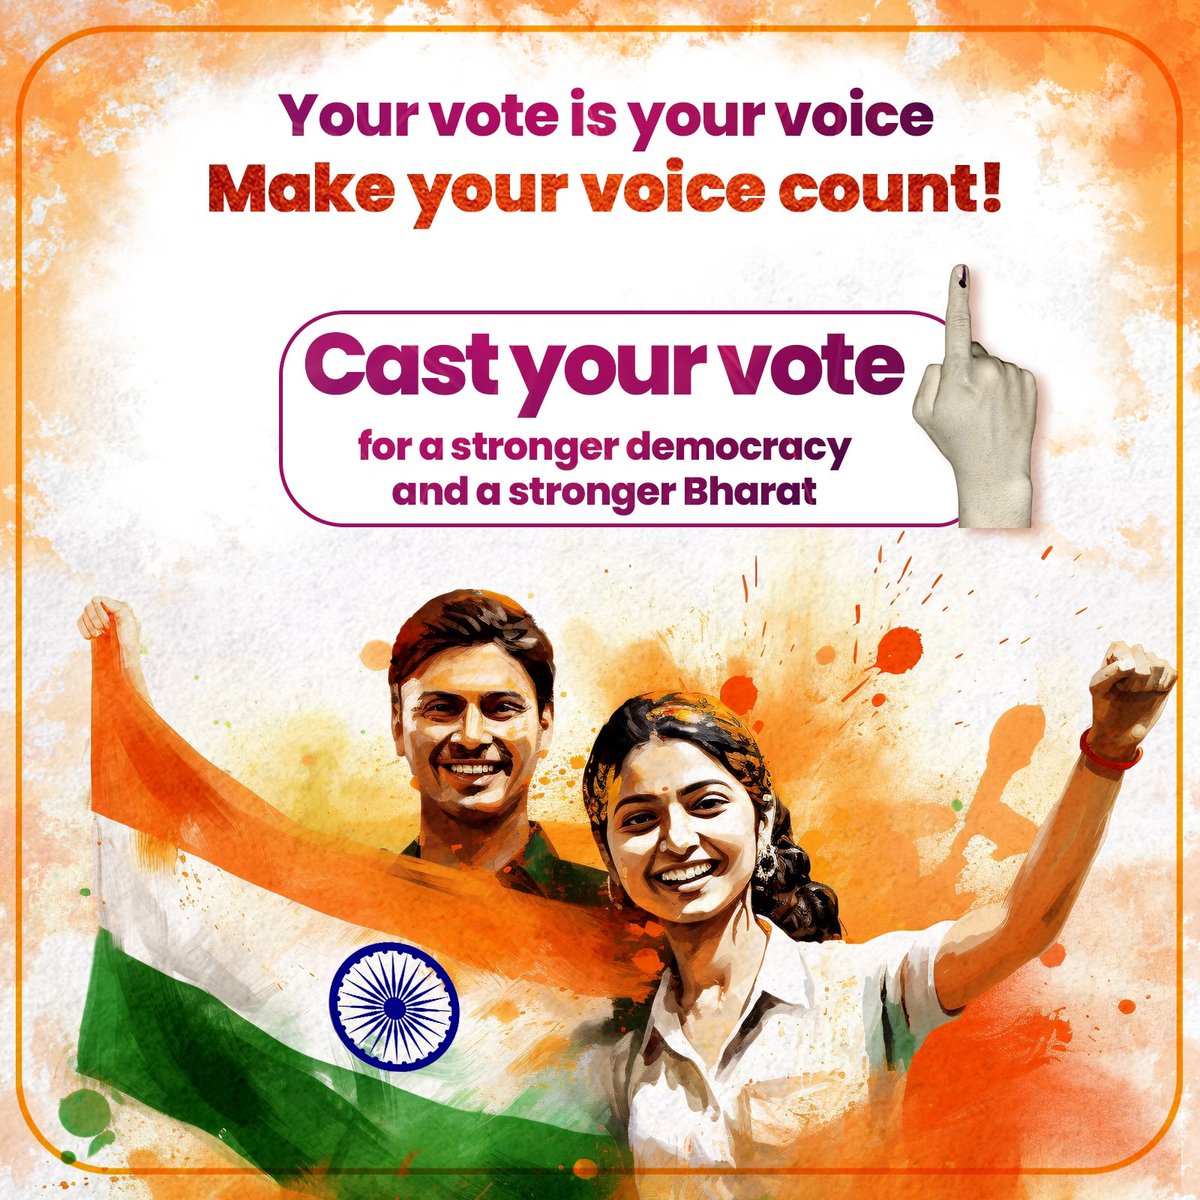 पहले मतदान, फिर जलपान लोकसभा चुनाव के सातवें चरण में आप सभी देवतुल्य मतदाताओं से अपील है कि लोकतंत्र के इस महापर्व में अपने मताधिकार का प्रयोग कर देश के प्रति अपने दायित्व का निर्वहन करें। आपके एक वोट की ताकत से सशक्त, समृद्ध और विकसित भारत के निर्माण का मार्ग प्रशस्त होगा।